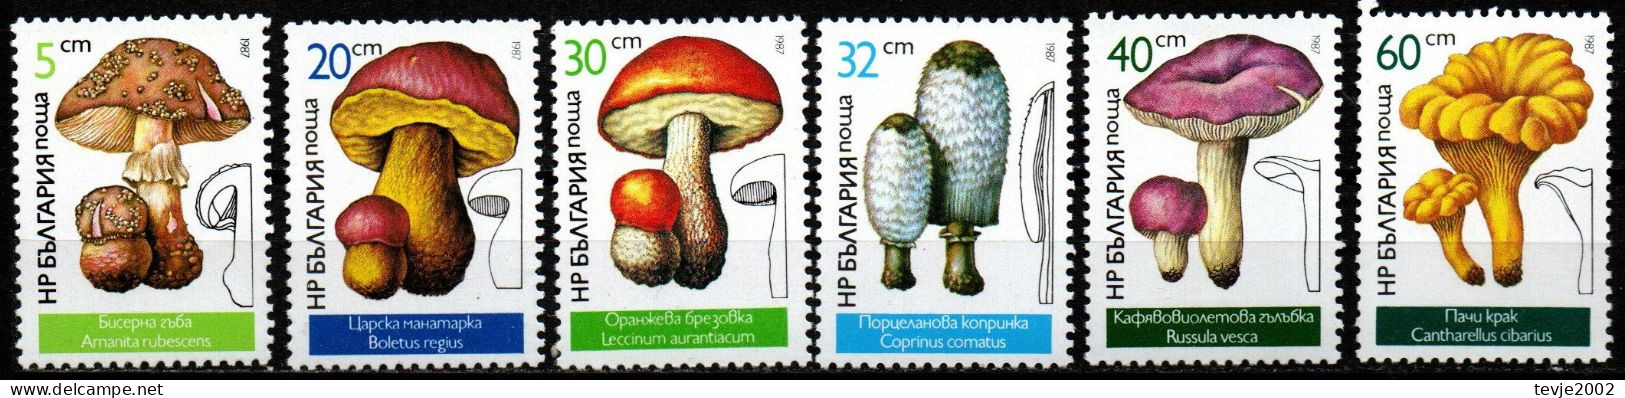 Bulgarien 1987 - Mi.Nr. 3546 - 3551 - Postfrisch MNH - Pilze Mushrooms - Paddestoelen